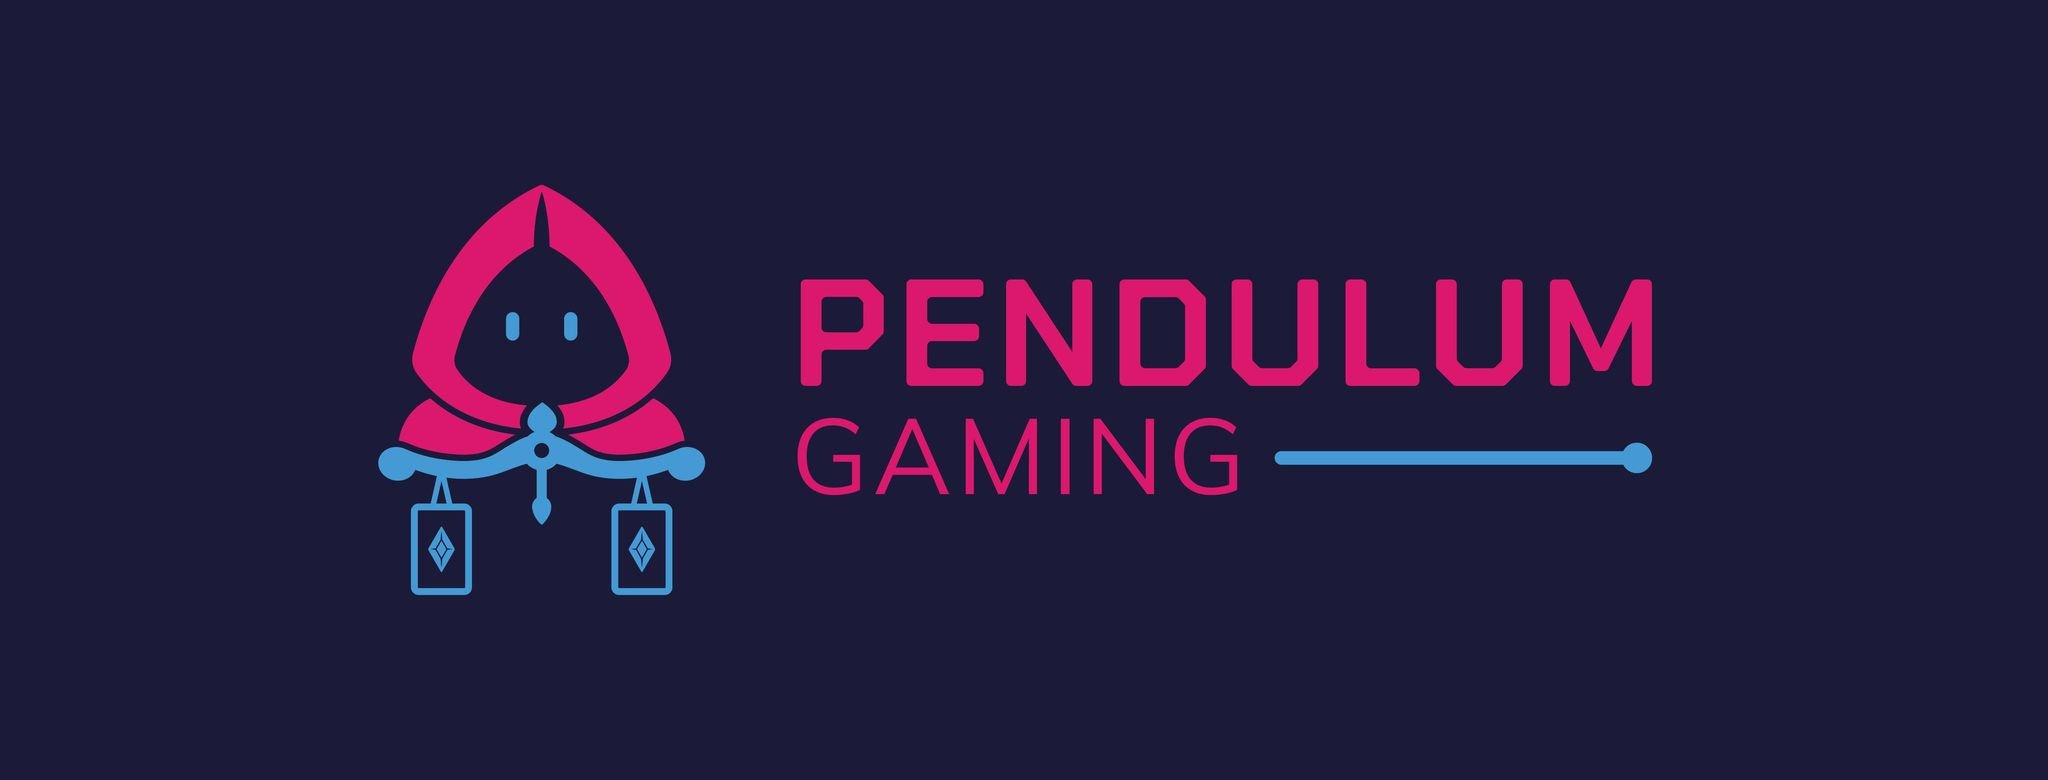 Pendulum Gaming Ltd